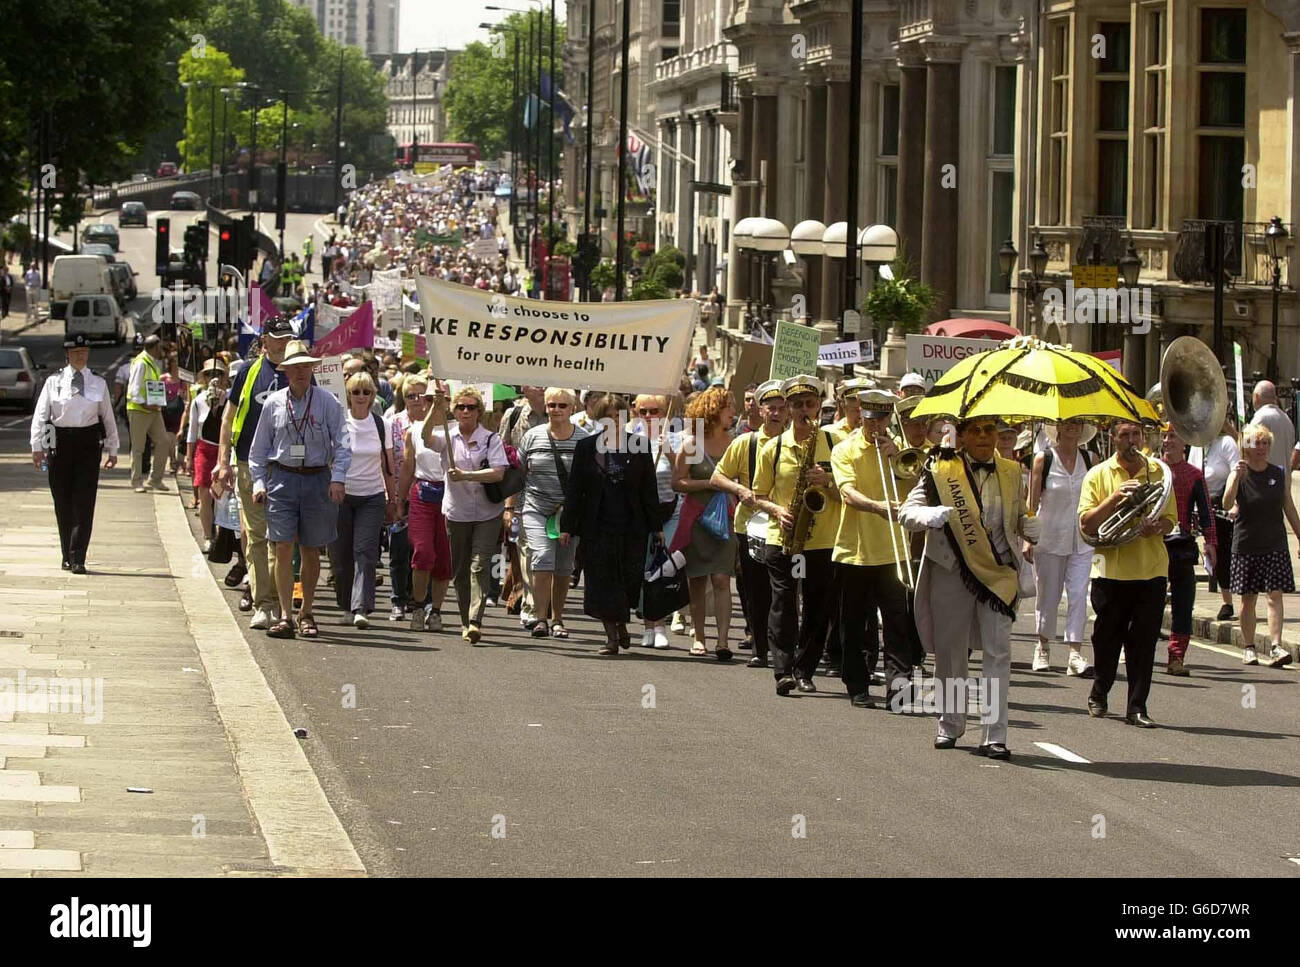 Demonstranten auf dem marsch, der von der Bewegung für Gesundheitsfreiheit in London organisiert wurde, um gegen die von der EU für pflanzliche Heilmittel festgelegten Vorschriften zu protestieren. Stockfoto